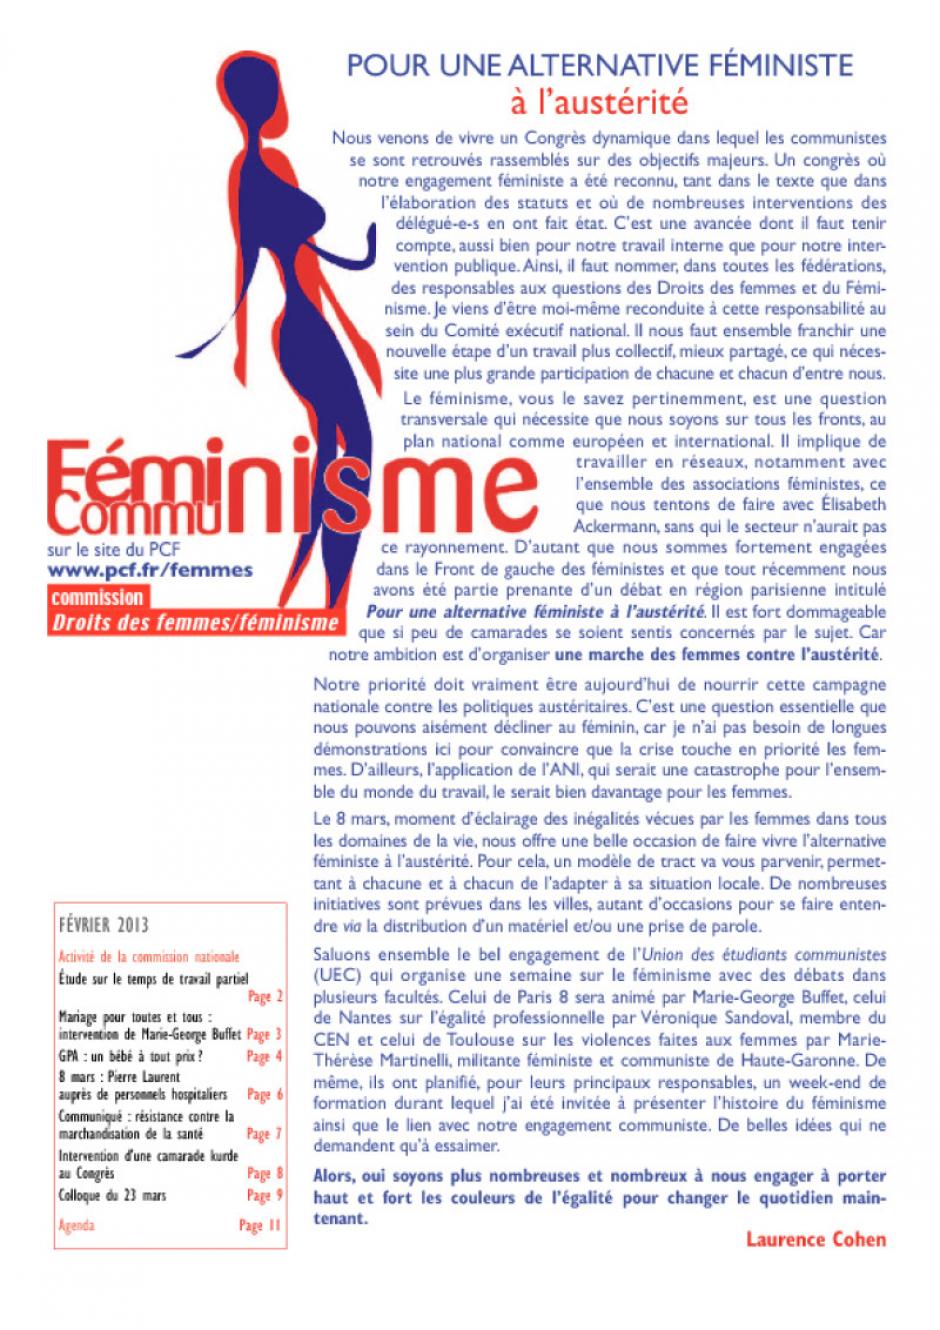 COMMUNISTES FEMINISTES - BULLETIN FEVRIER 2013